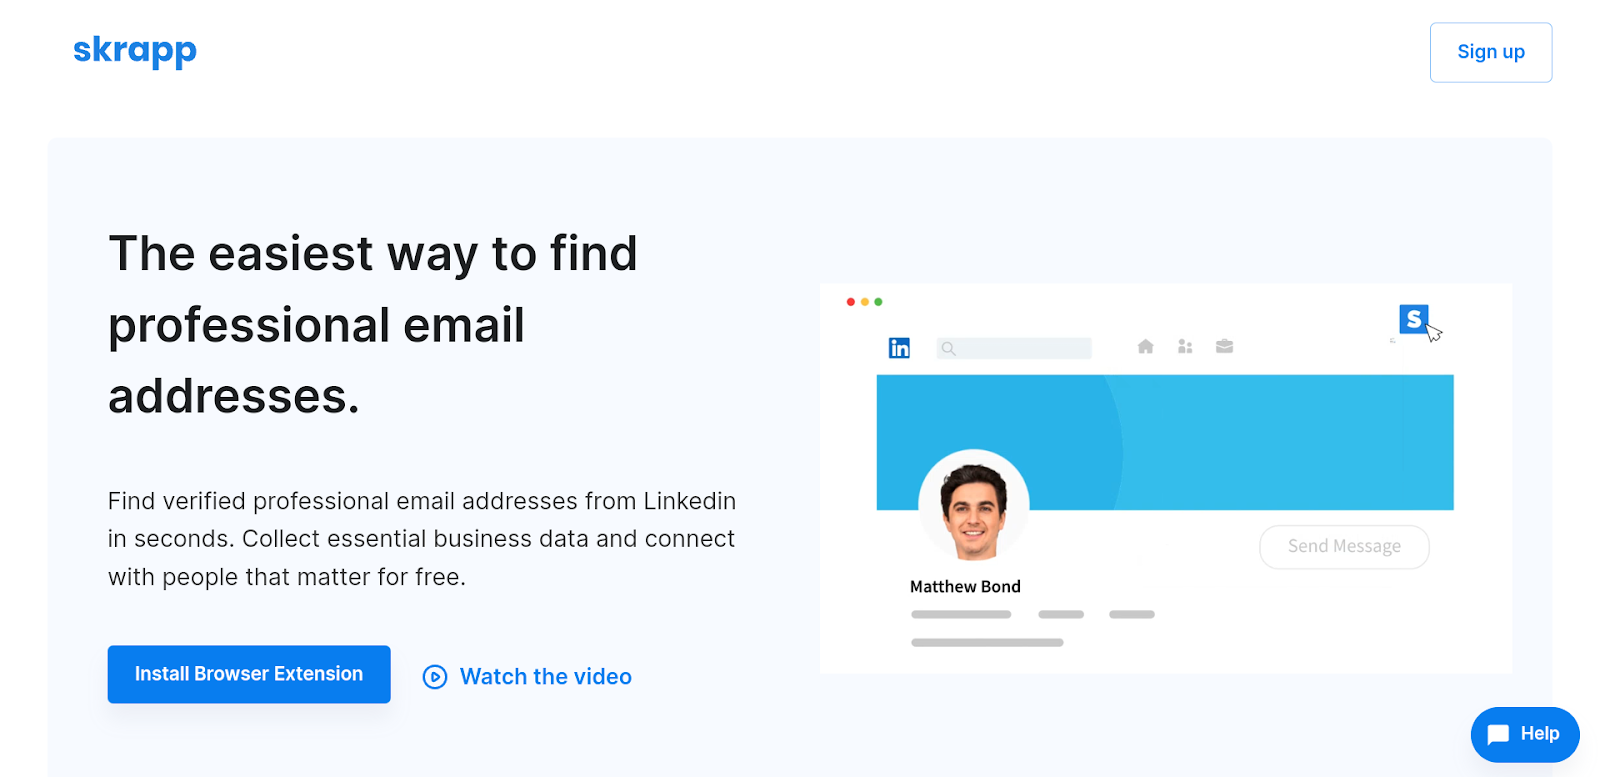 Email finder for LinkedIn - Skrapp